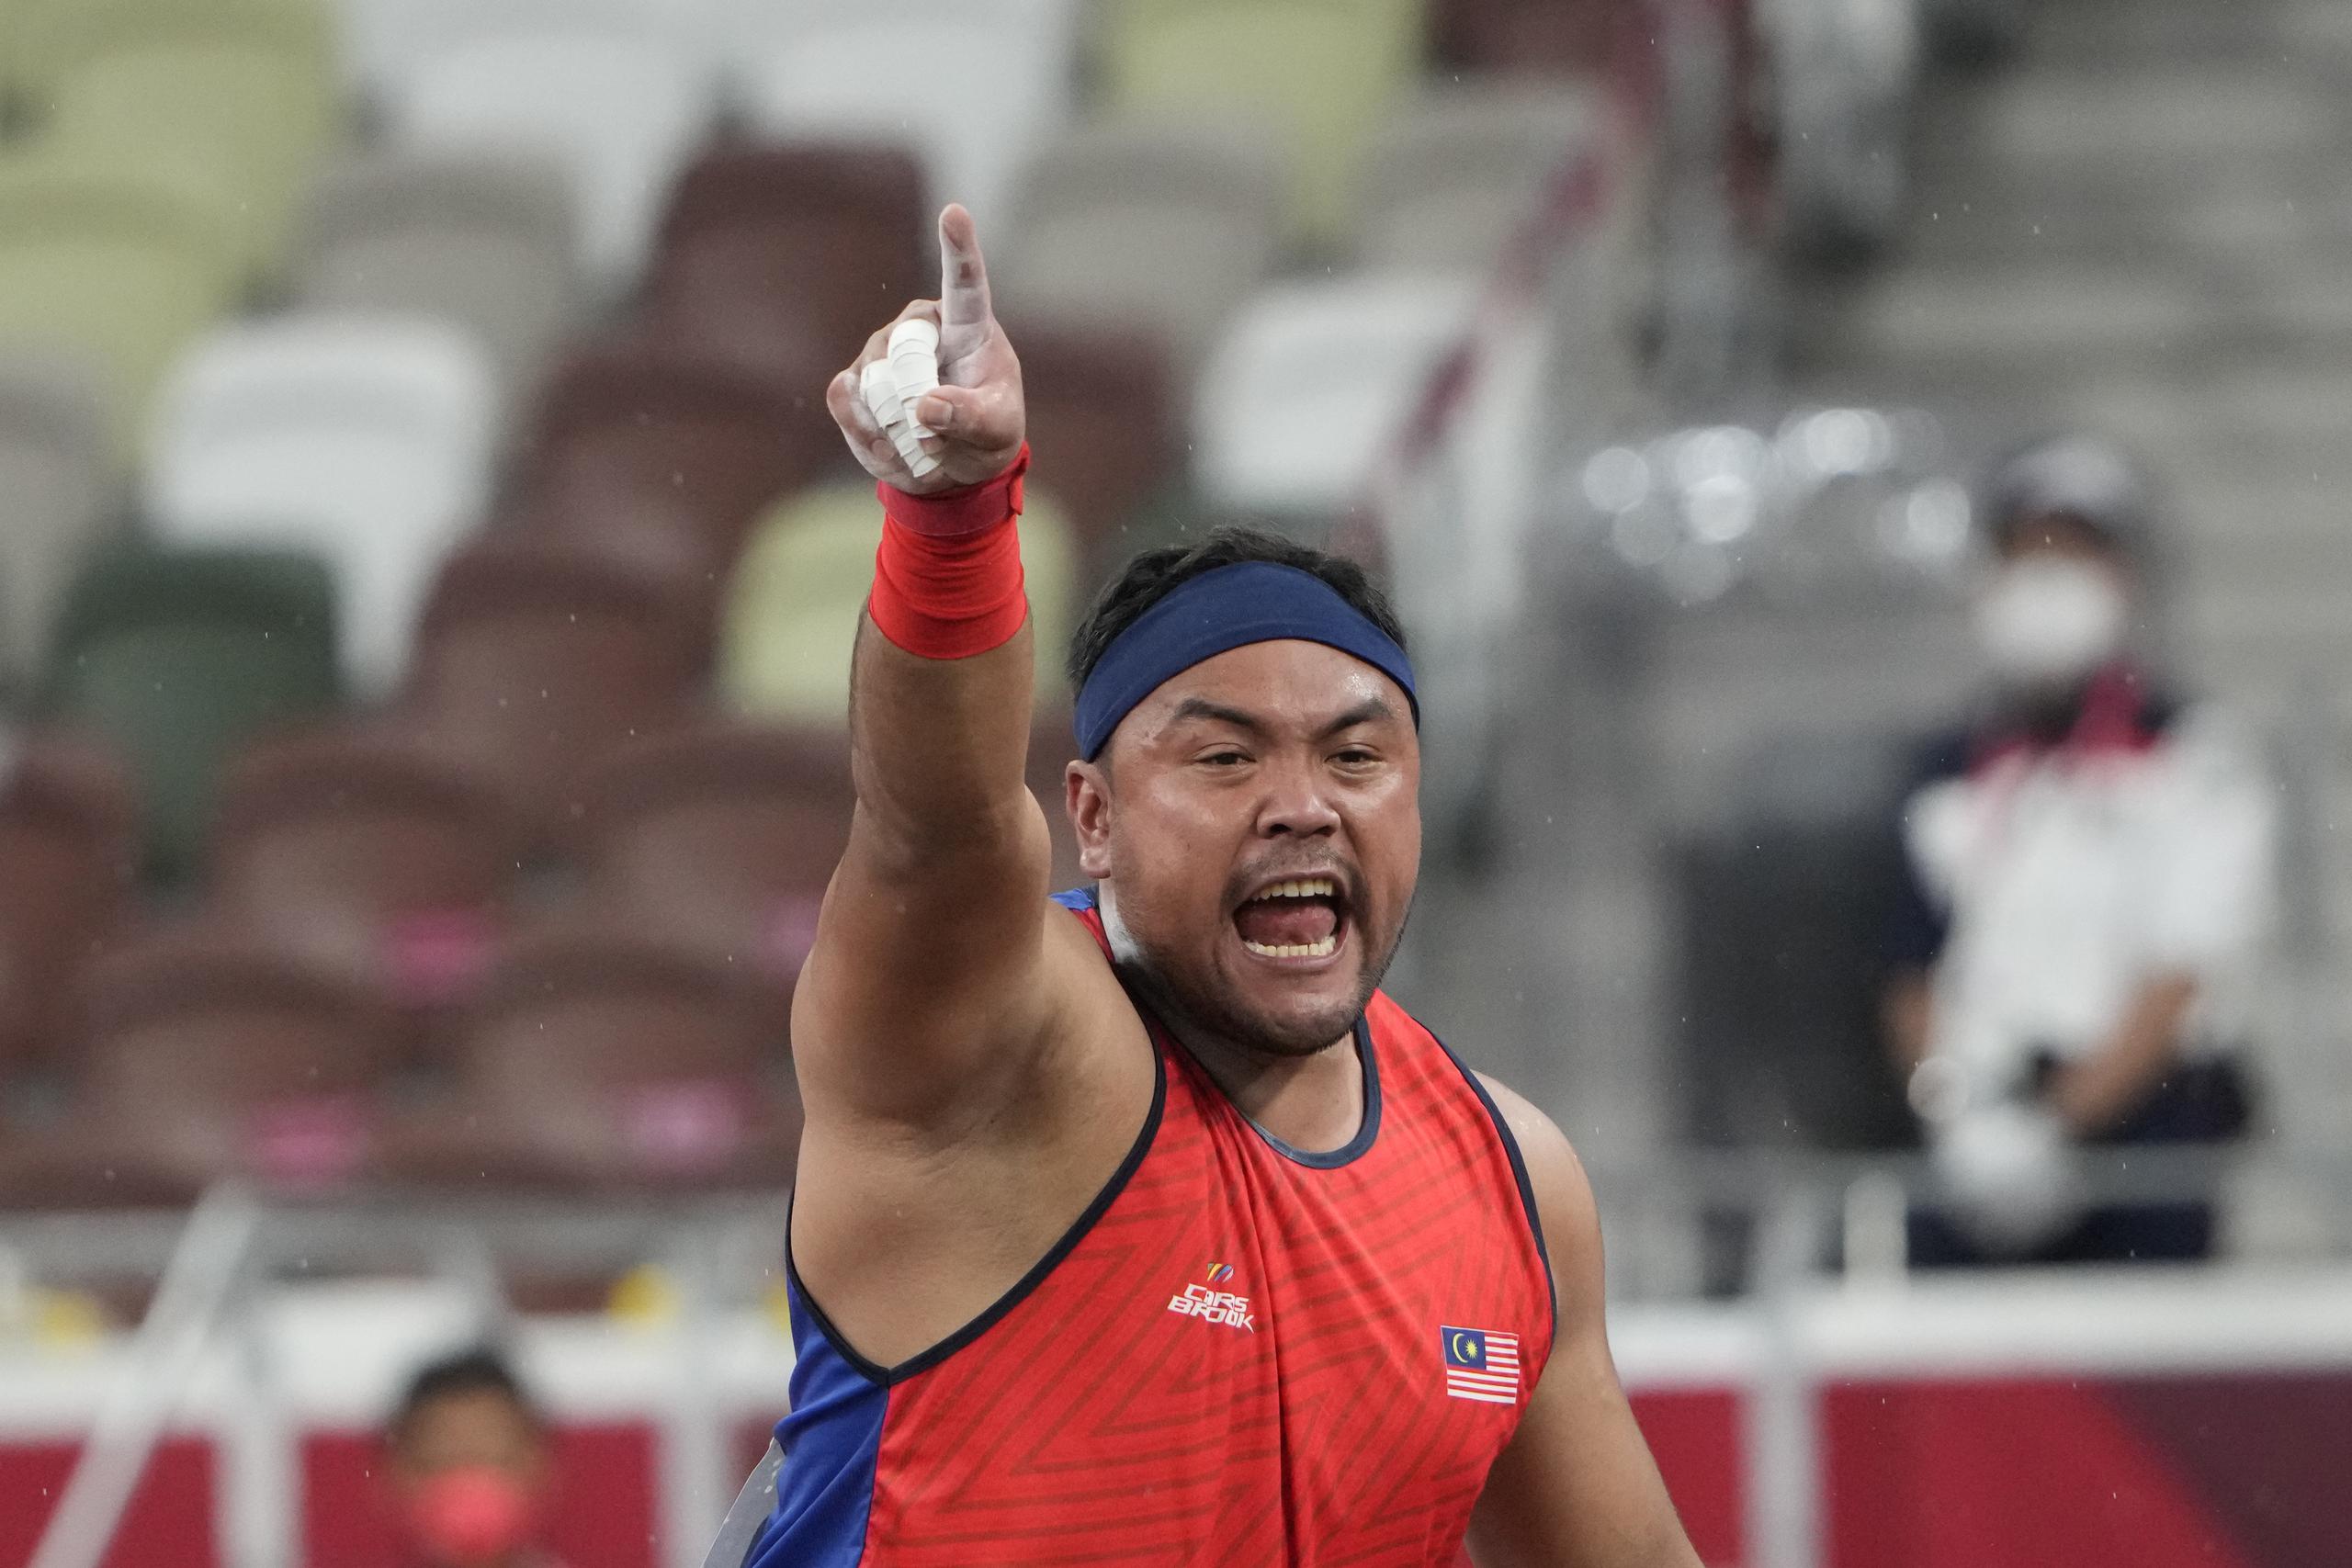 En esta imagen de archivo, tomada el 31 de agosto de 2021, el lanzador de bala malasio Muhammad Ziyad Zolkefli reacciona tras competir en la final de la disciplina F20 en los Juegos Paralímpicos de Tokyo 2020, en el Estadio Nacional, en Tokio. (AP Foto/Eugene Hoshiko, archivo)